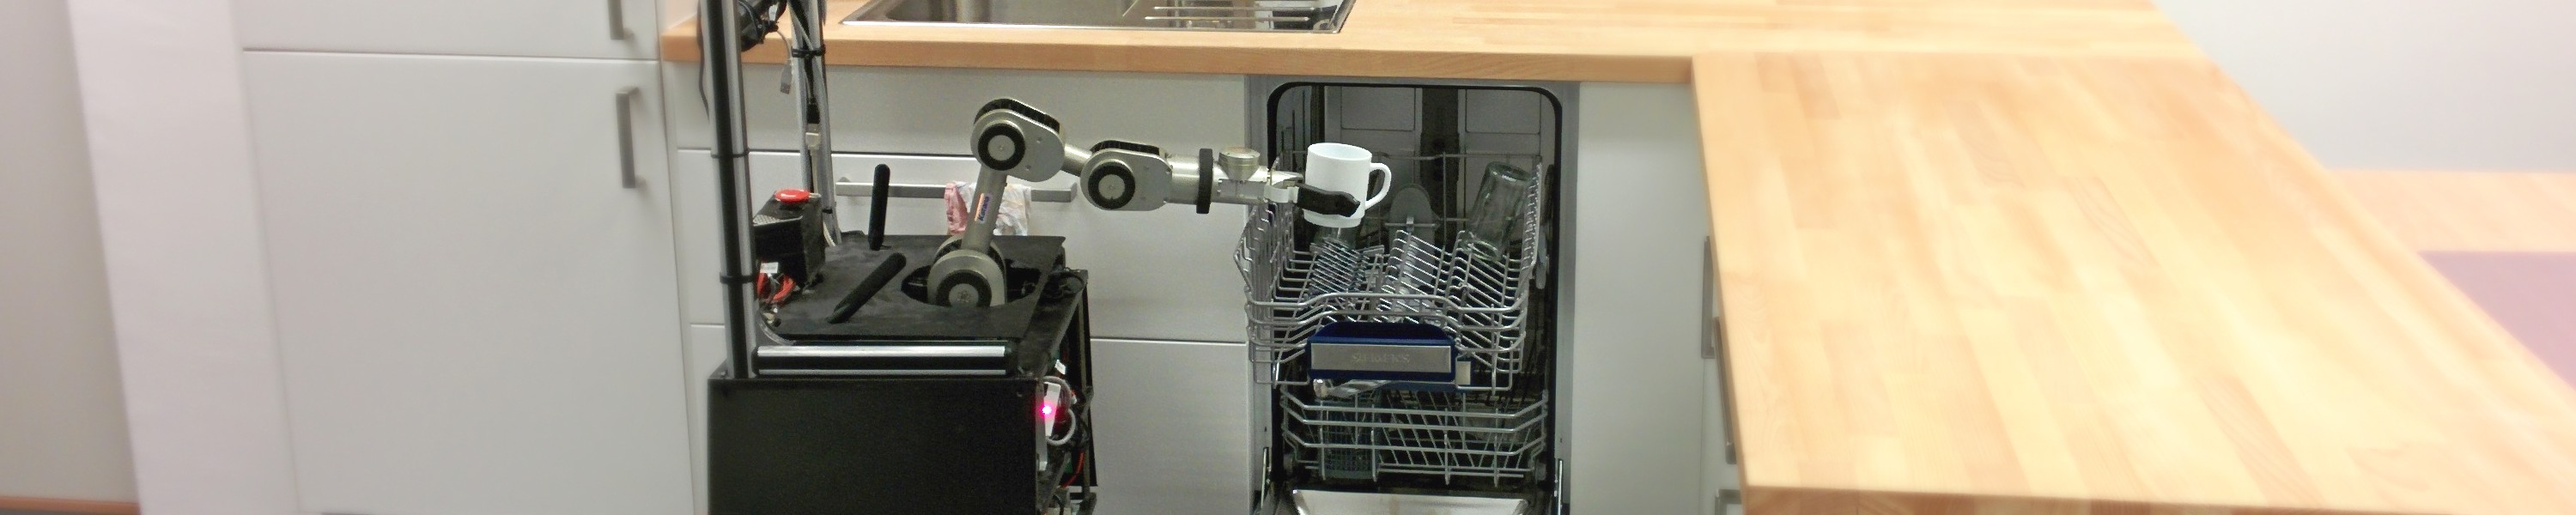 KBSG’s Caesar robot approaching dish washer